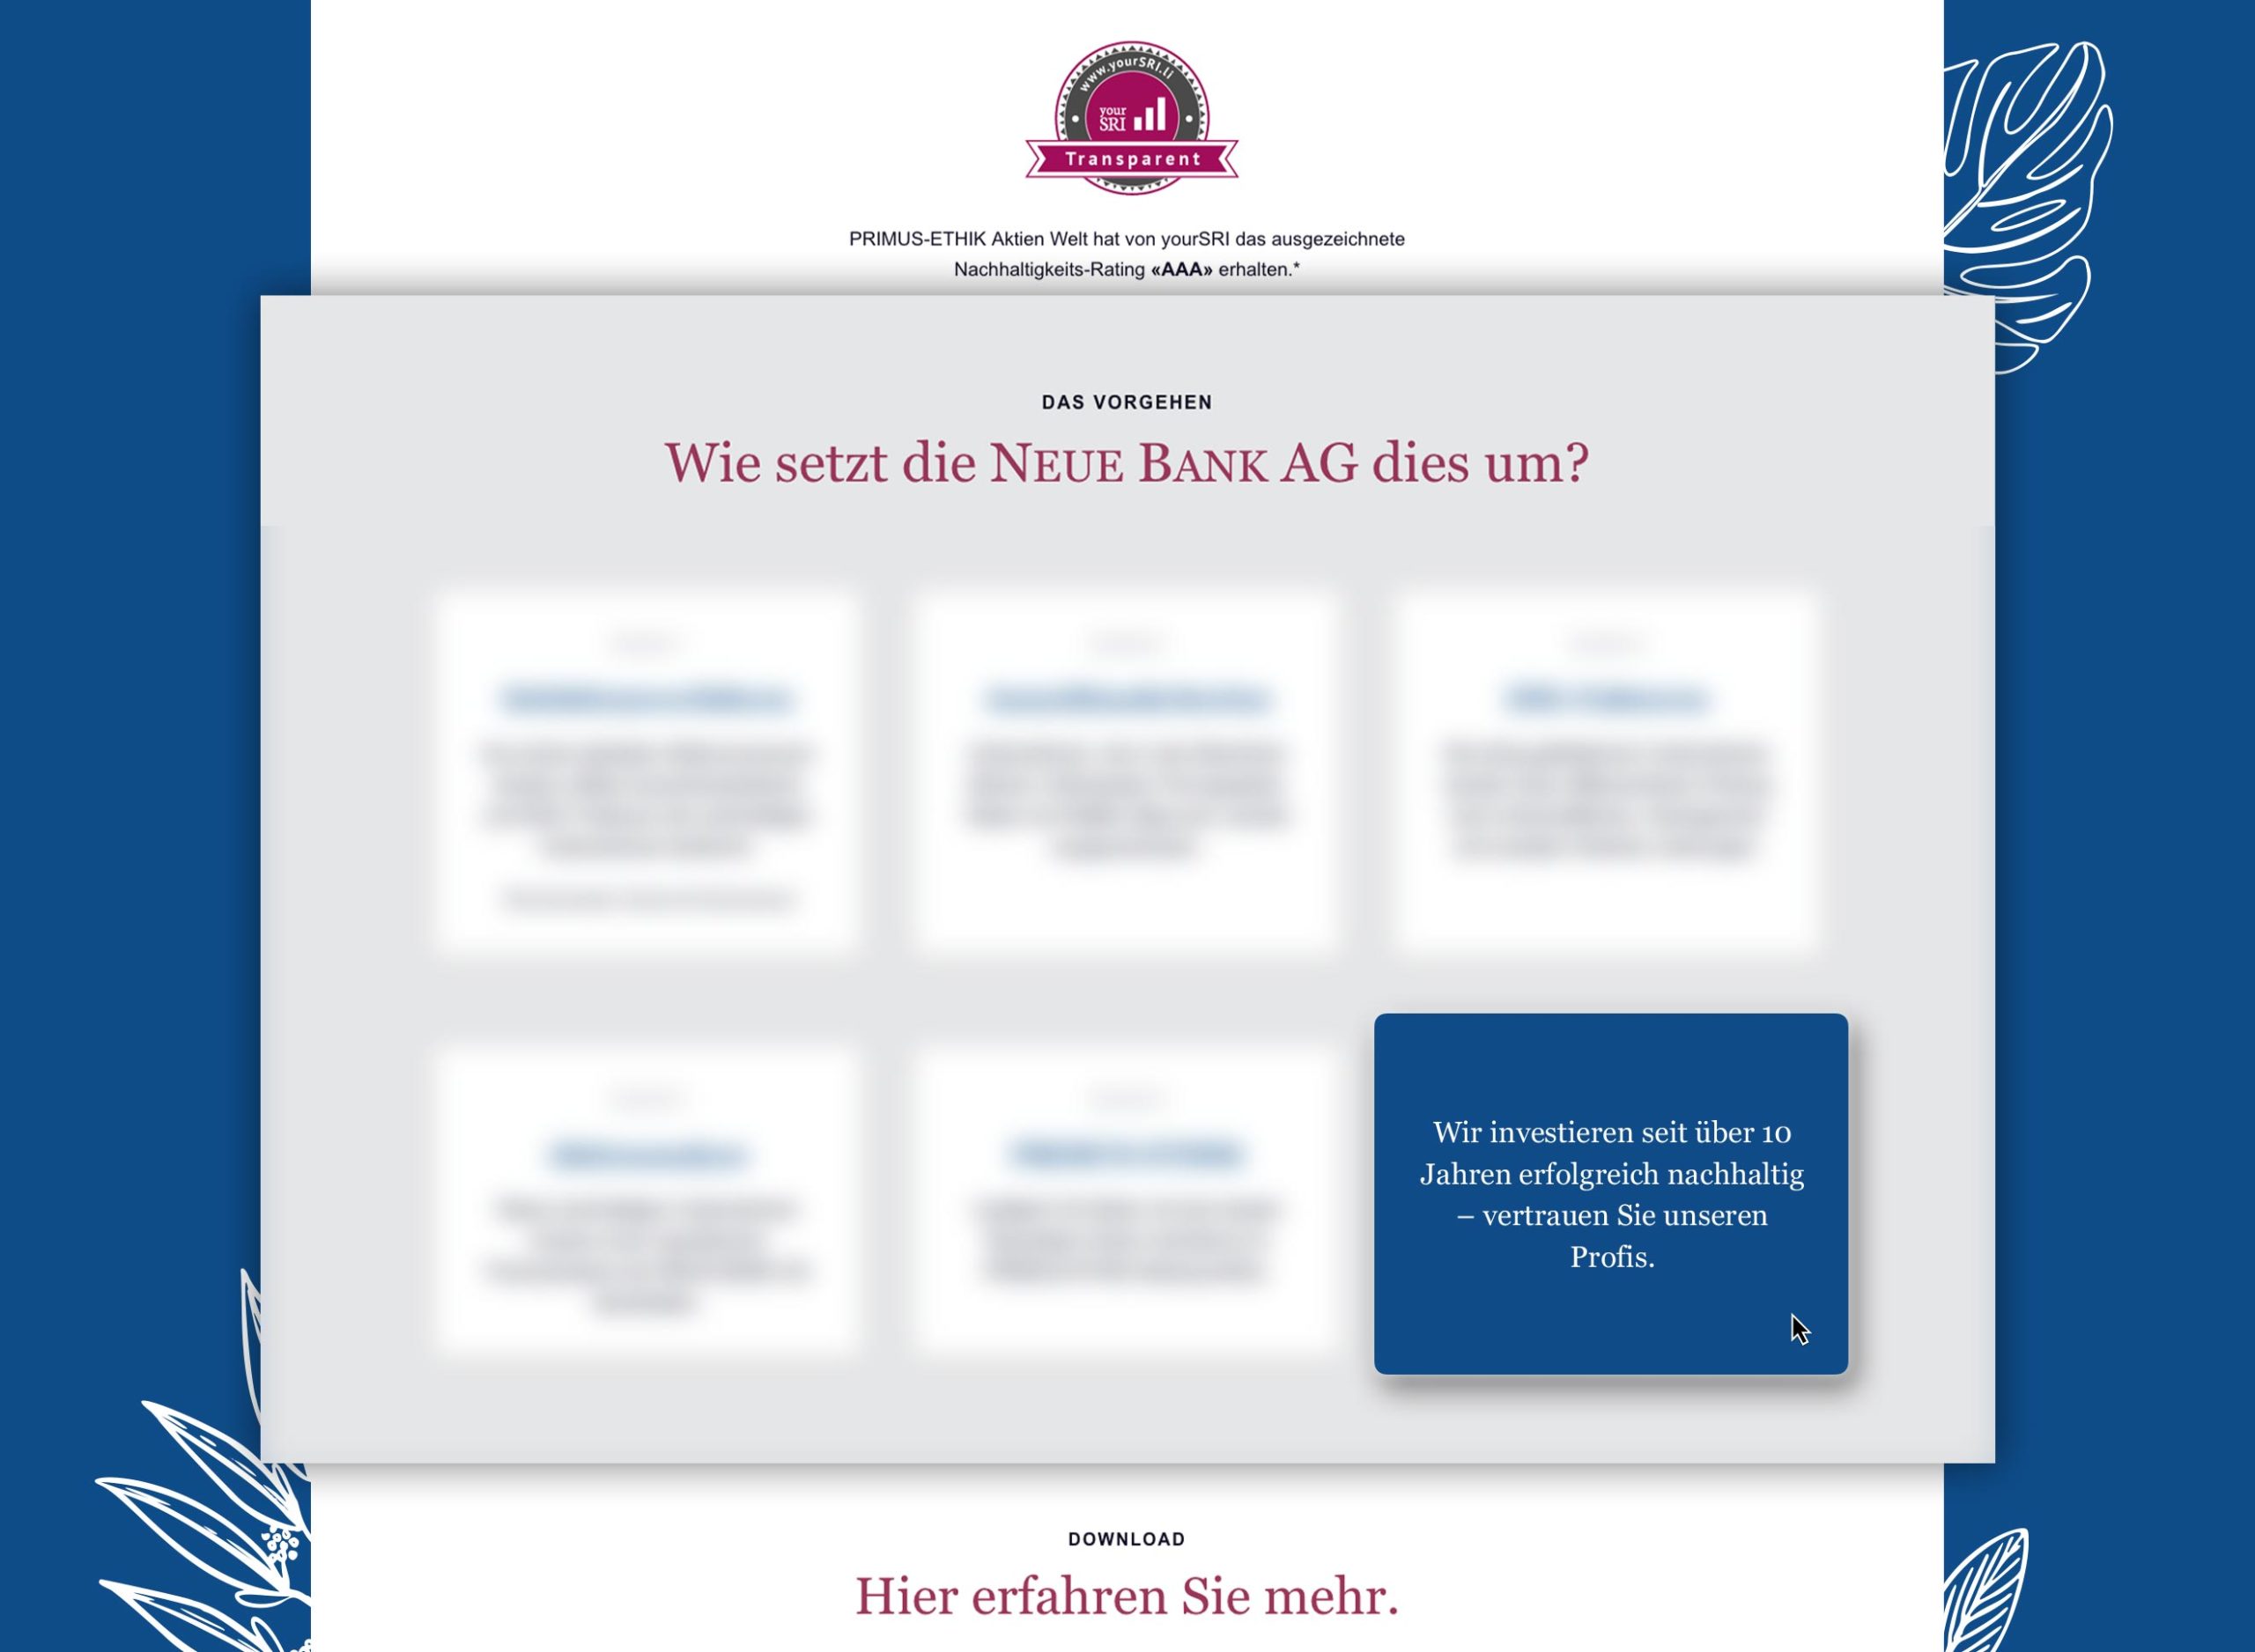 Online Advertising Liechtenstein, Neue Bank